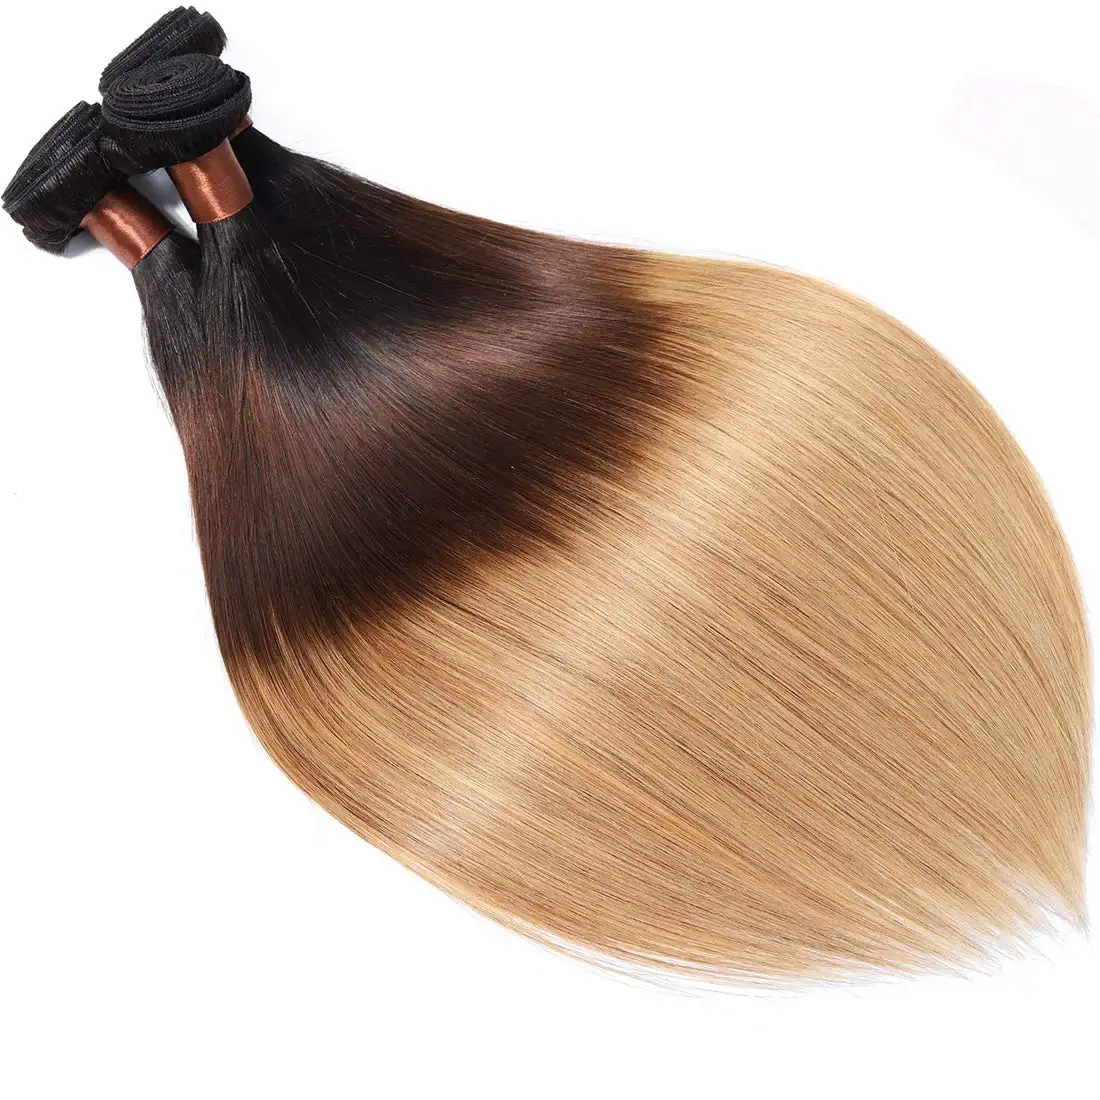 وصلات شعر مستعار طبيعي غير معالج للبيع بالجملة خصلات شعر ريمي للتركيب بثلاثة ألوان